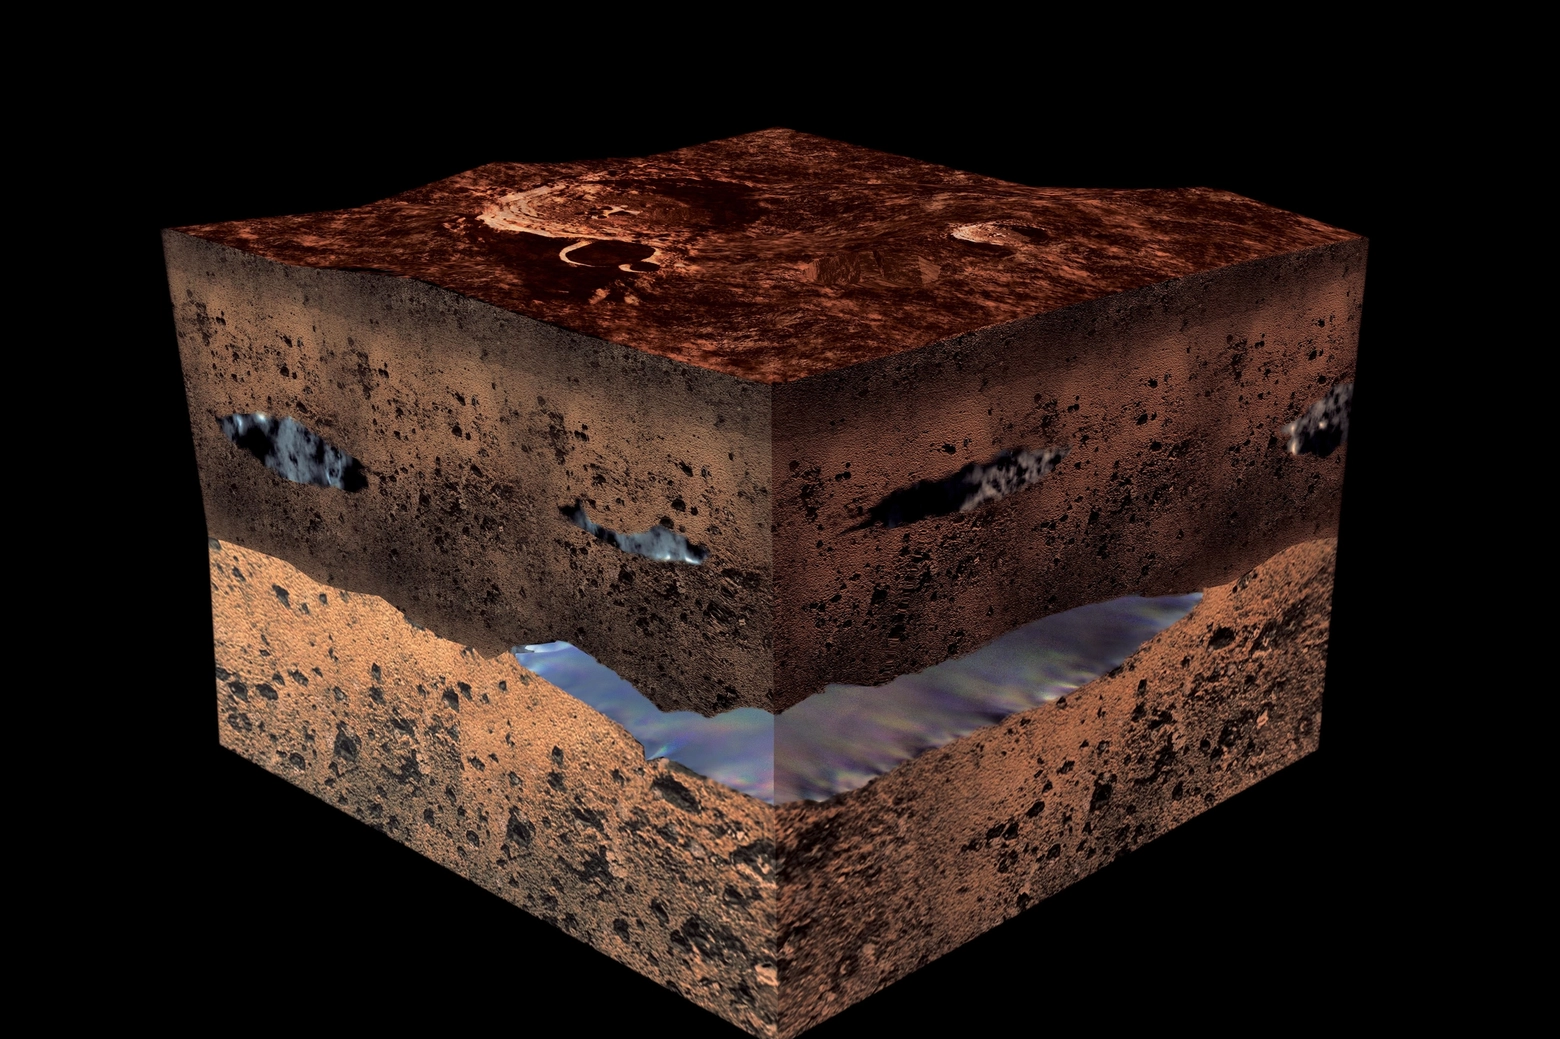 Scoperto un lago di acqua salata nelle profondità del Pianeta Marte (Dire)